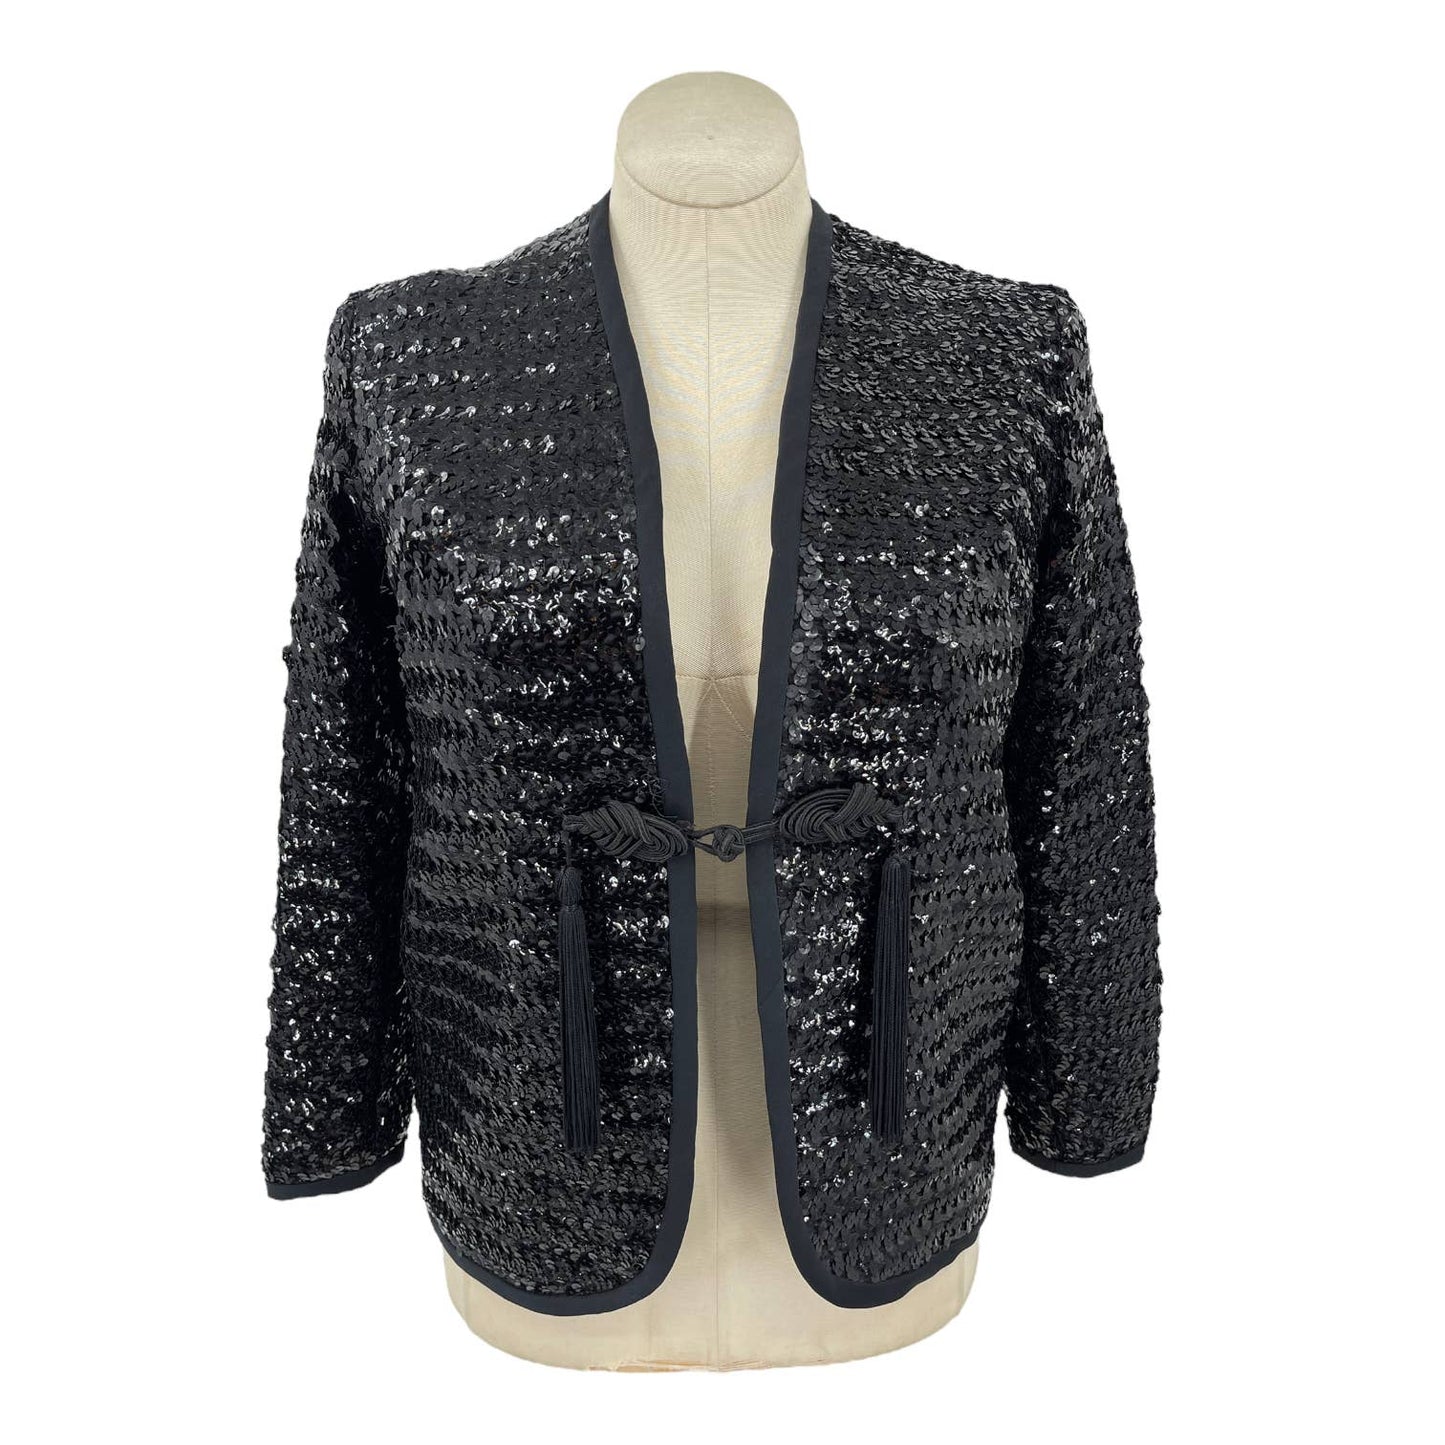 Vintage 70s Black Sequin Jacket Tassel Detail Super Glam Henry Higgins Size M L